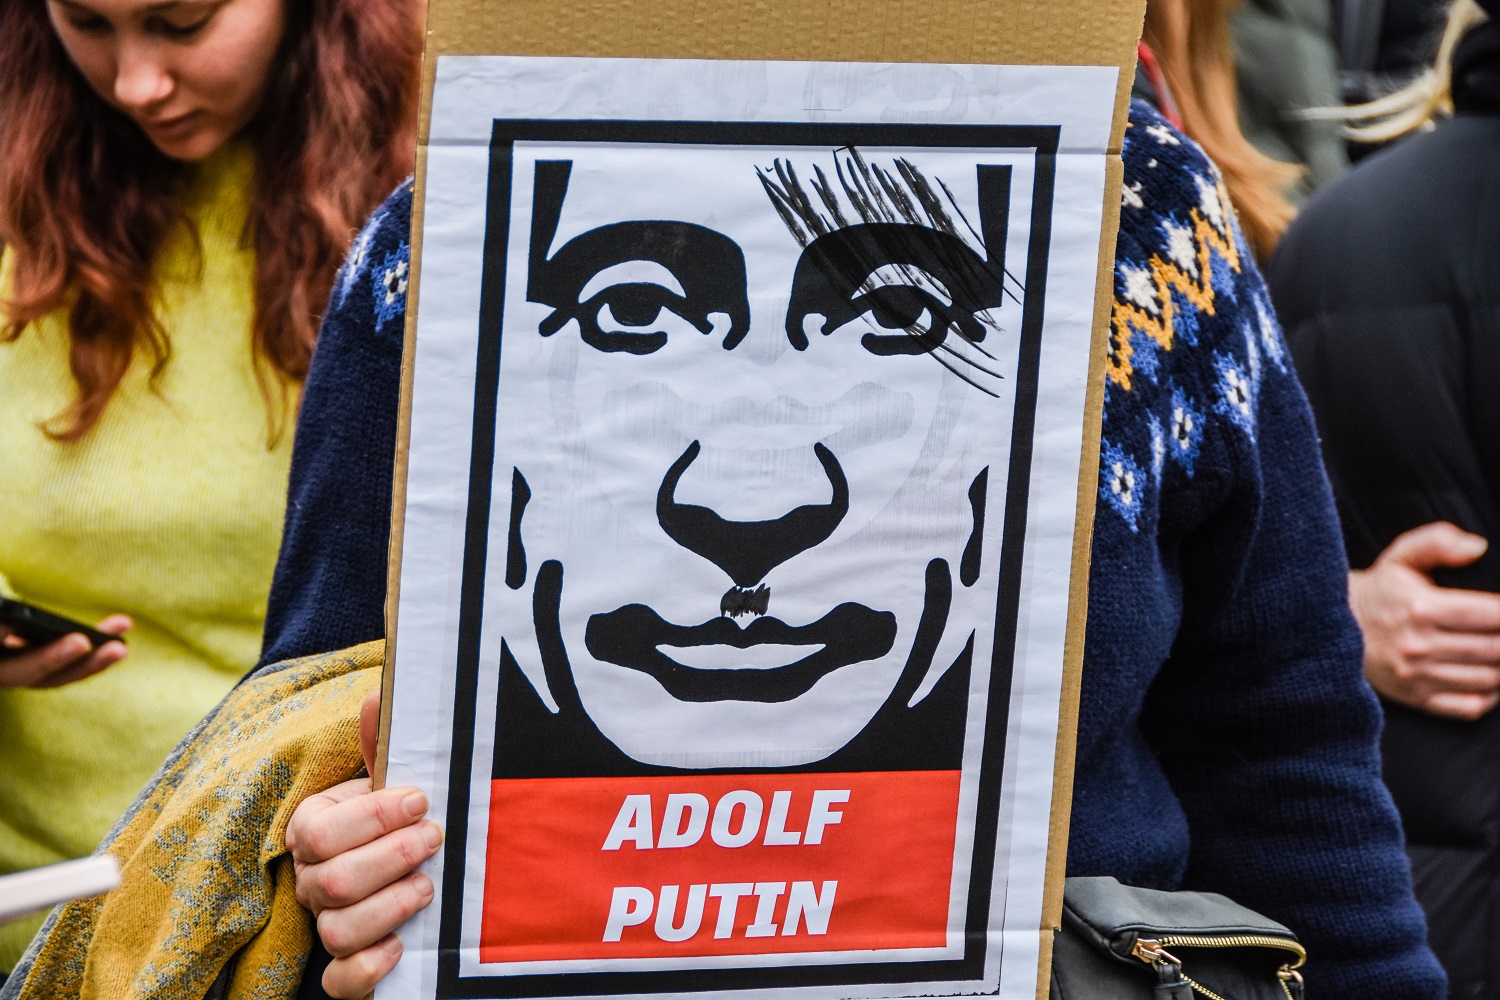 Kyjivas: baimė verčia V. Putiną dislokuoti branduolinius ginklus Baltarusijoje